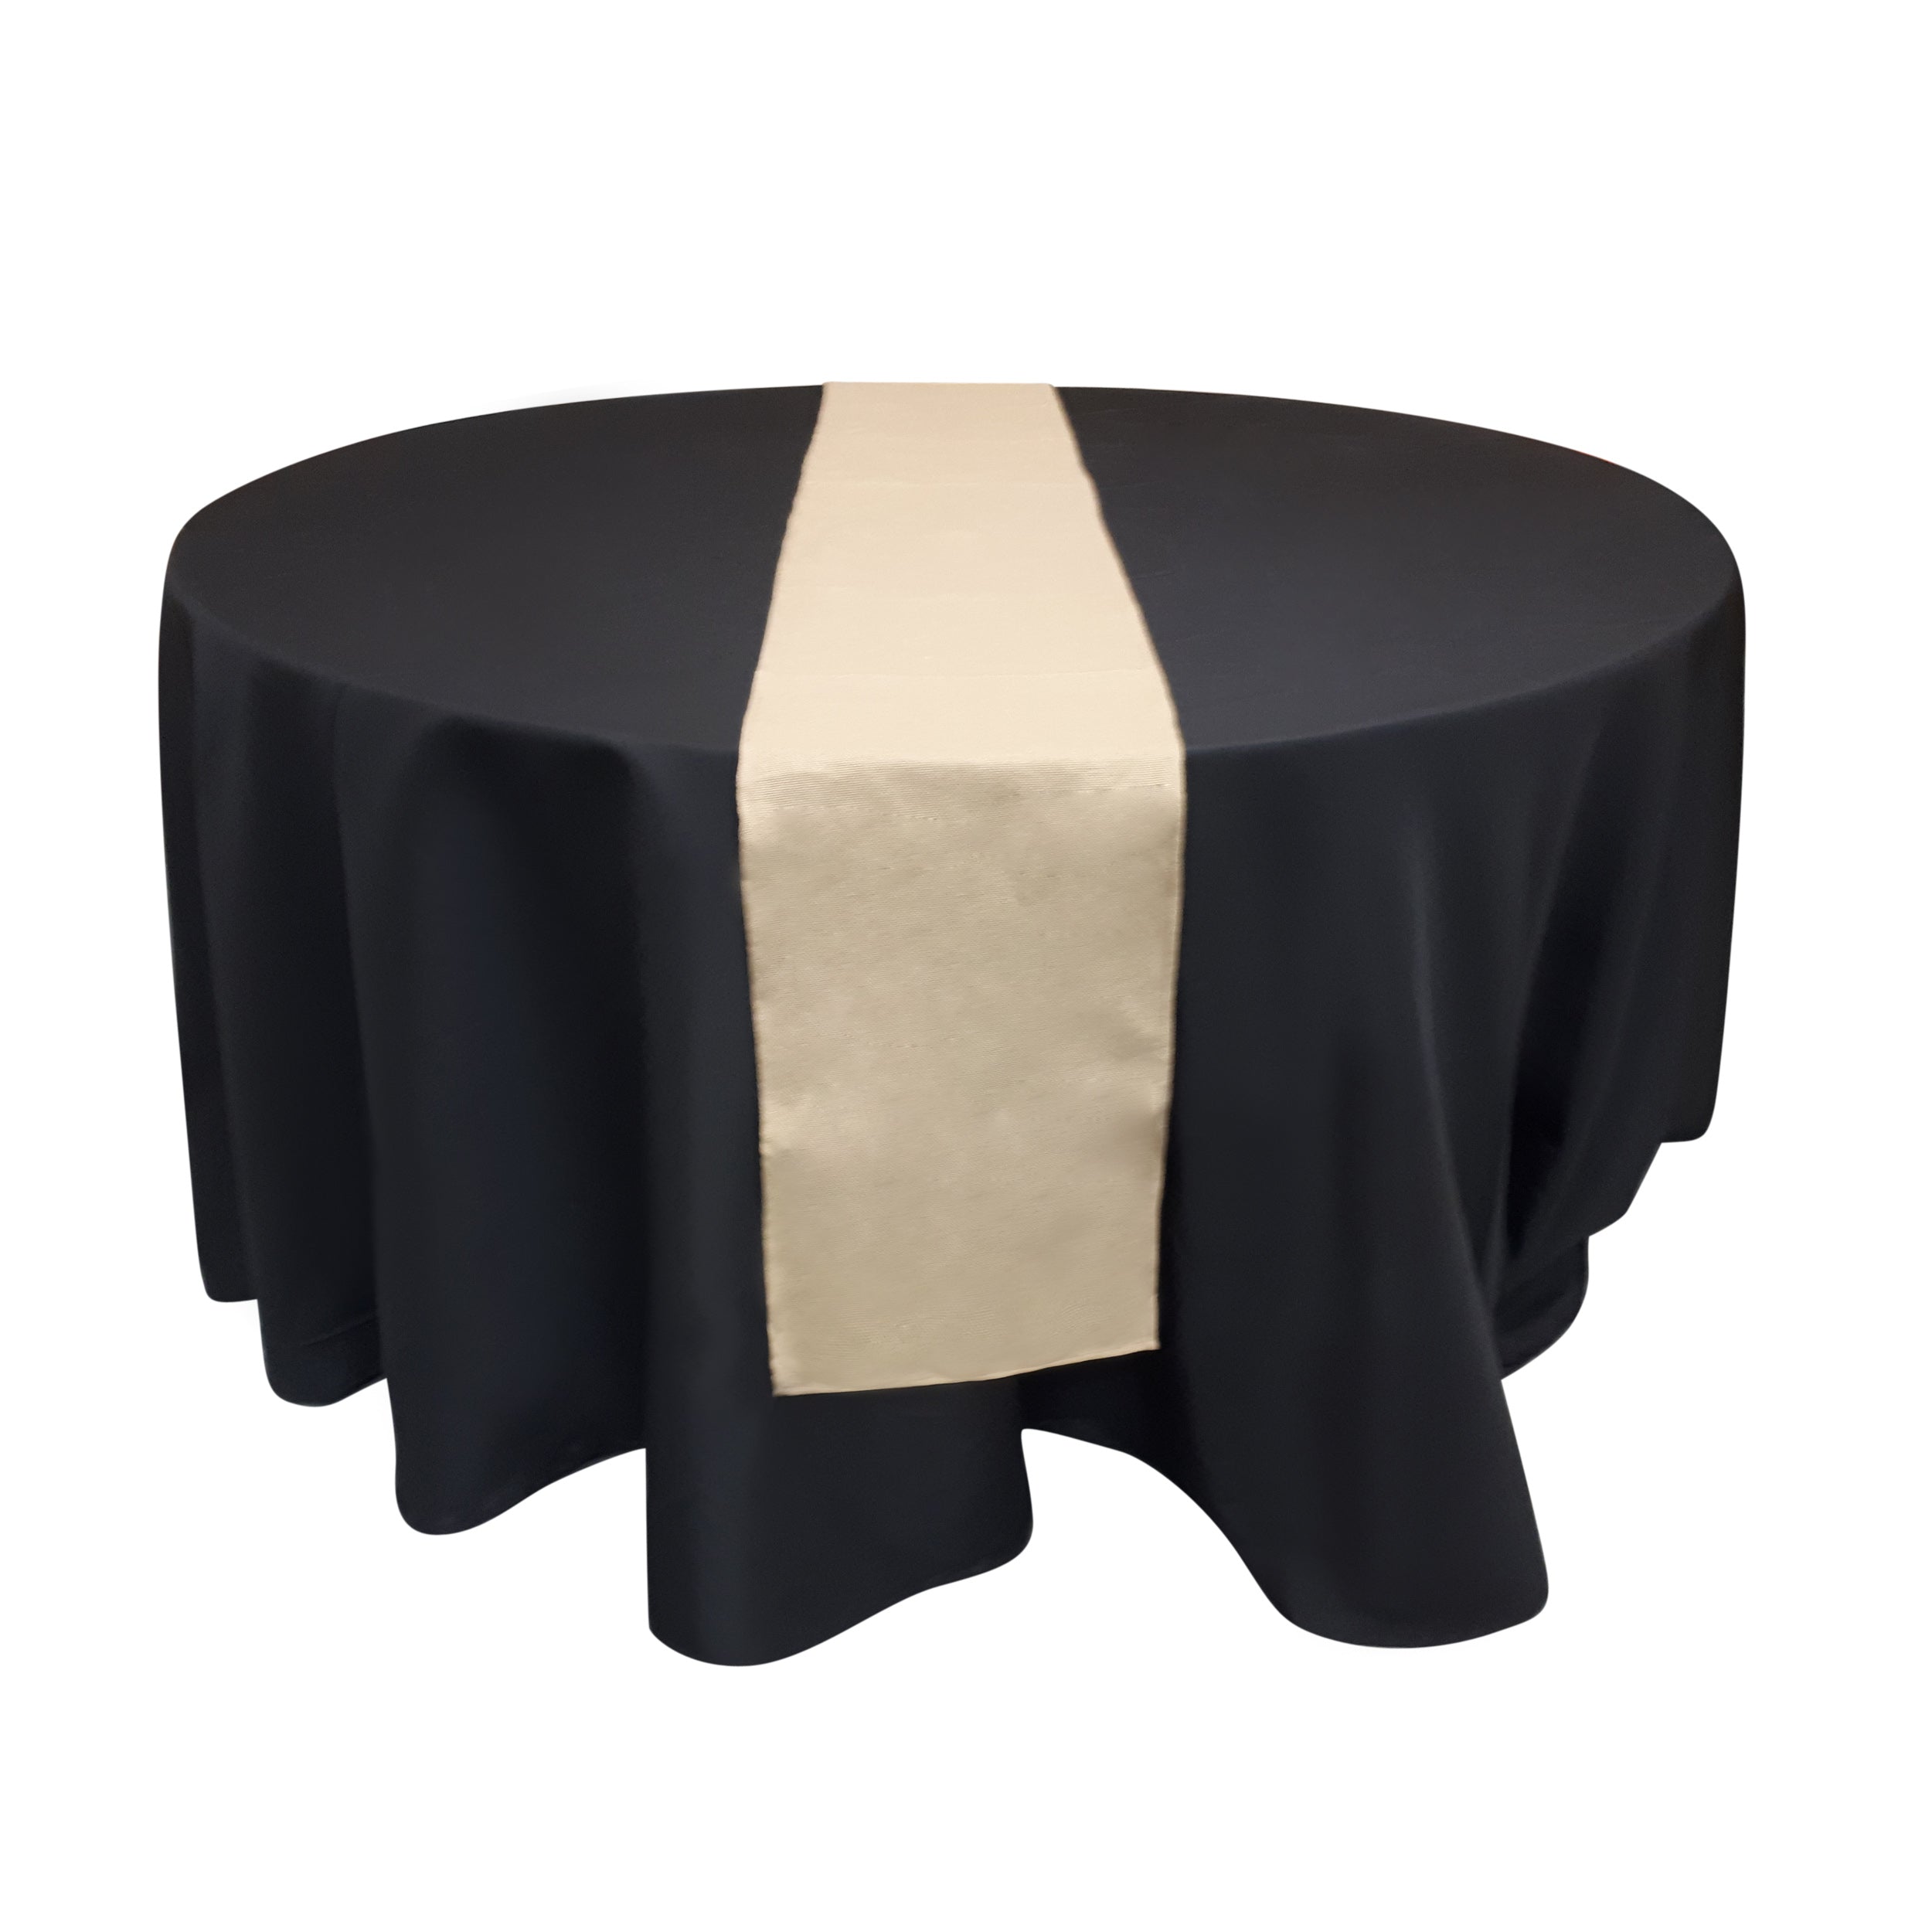 Chemin de table en jute 12'' x 108'' (31 cm x 274 cm) - Nappe Tablecloth